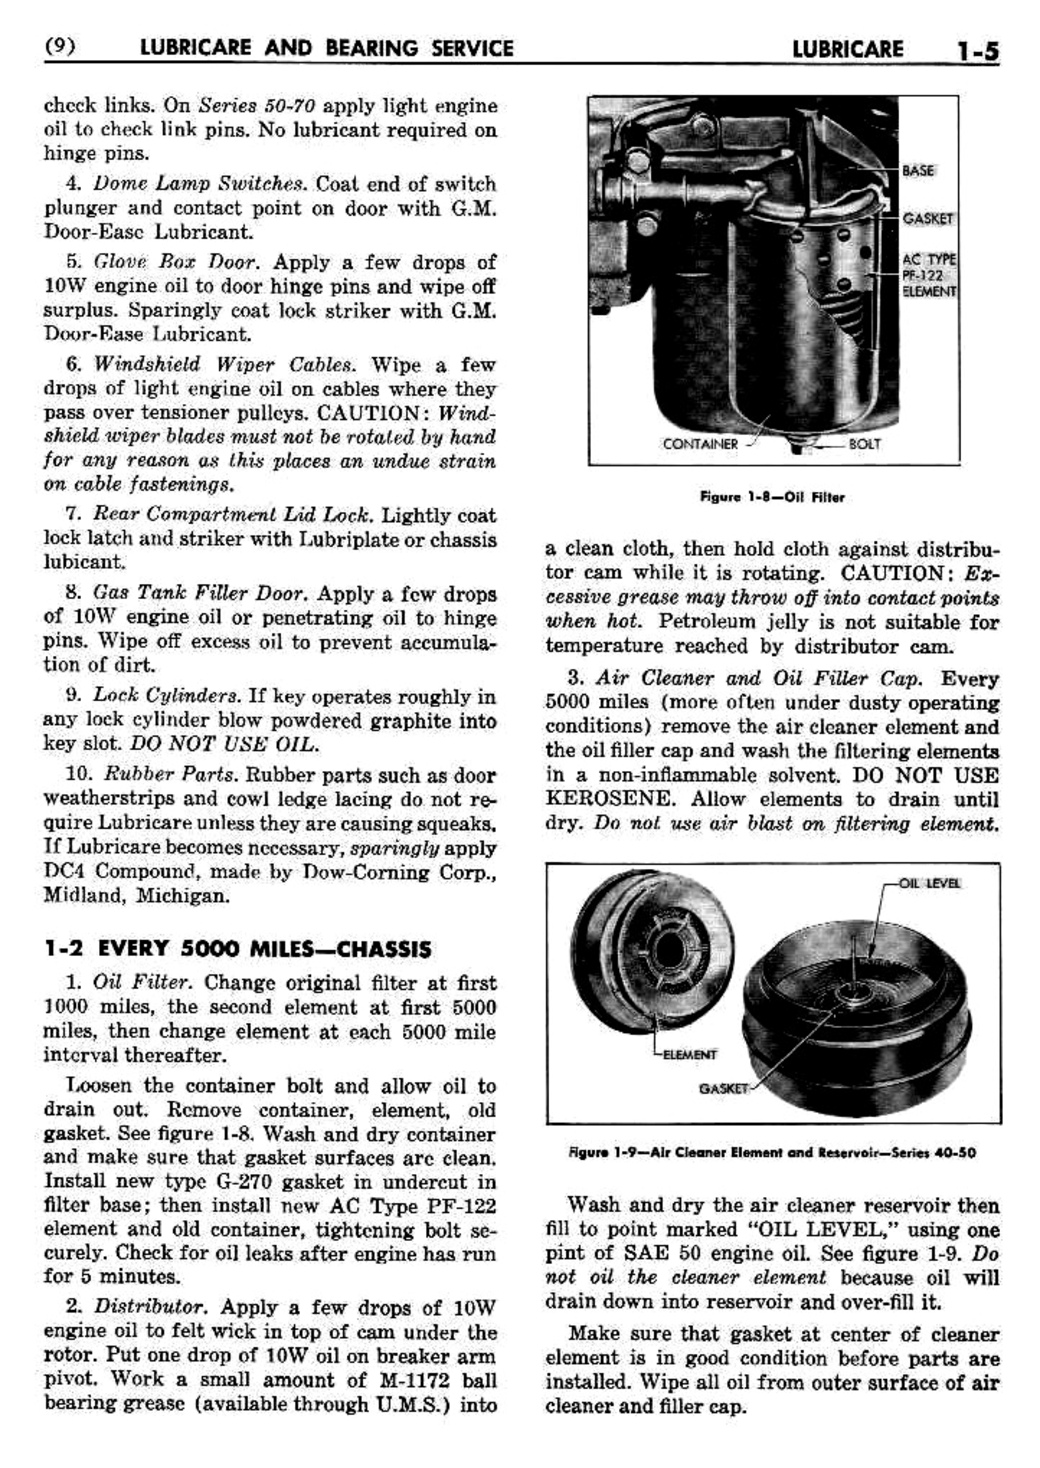 n_02 1954 Buick Shop Manual - Lubricare-005-005.jpg